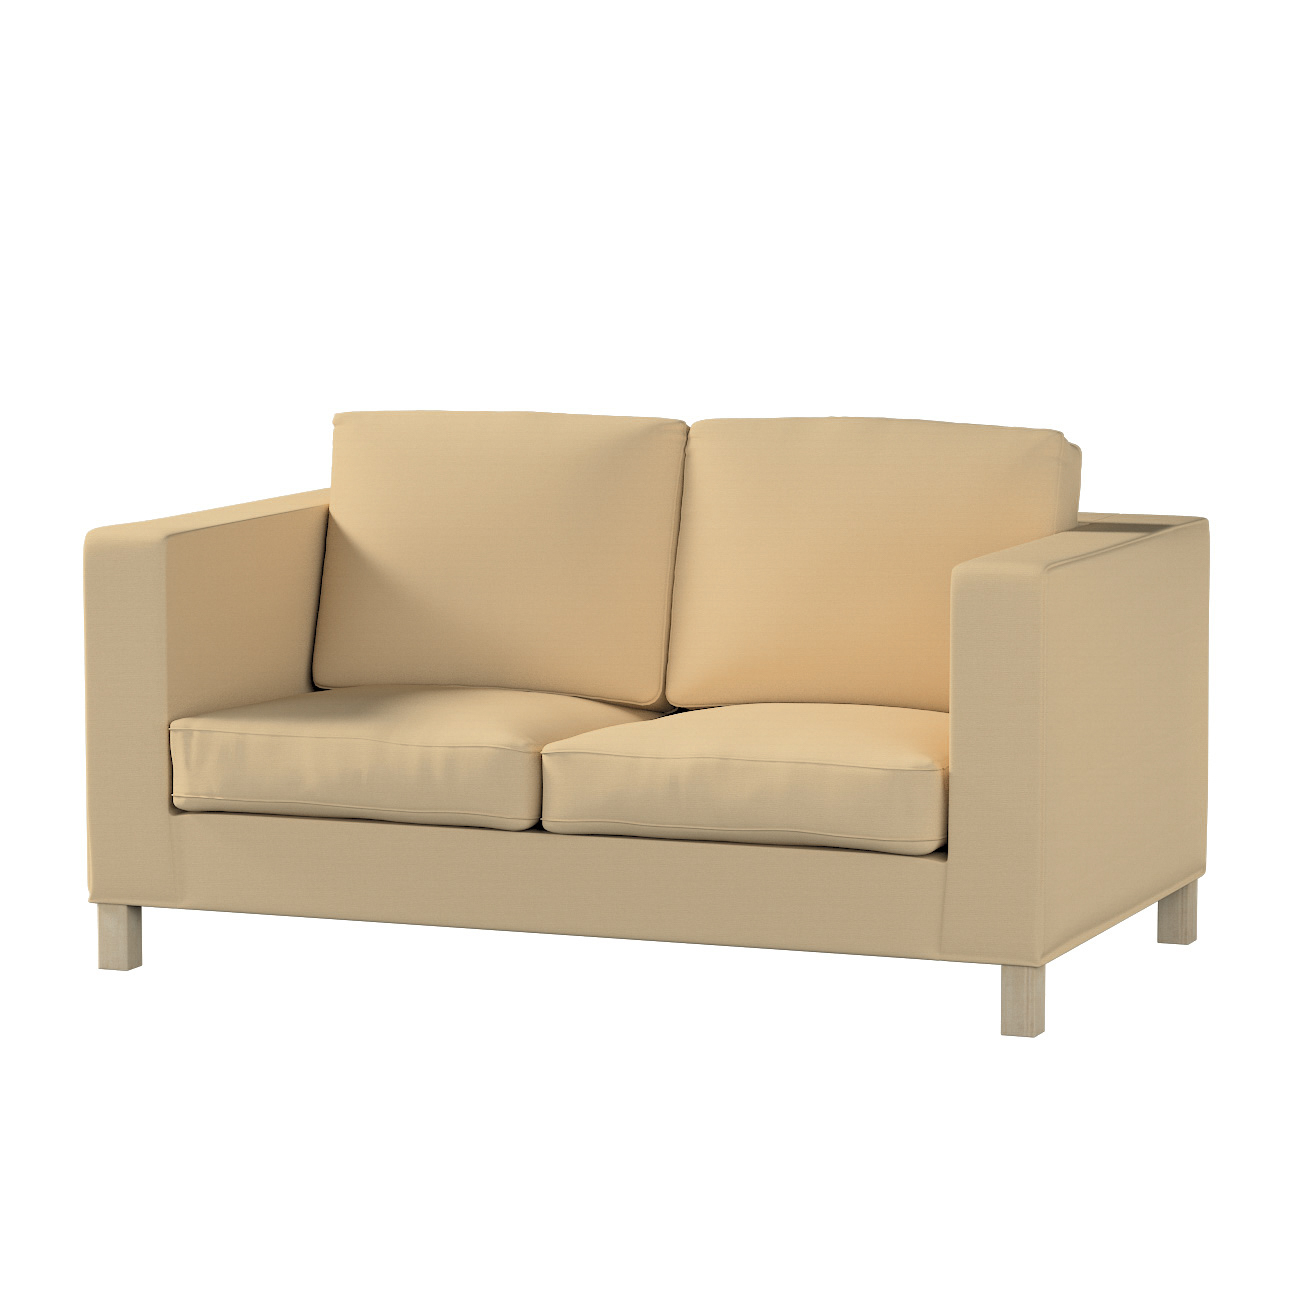 Bezug für Karlanda 2-Sitzer Sofa nicht ausklappbar, kurz, caffe latte, 60cm günstig online kaufen